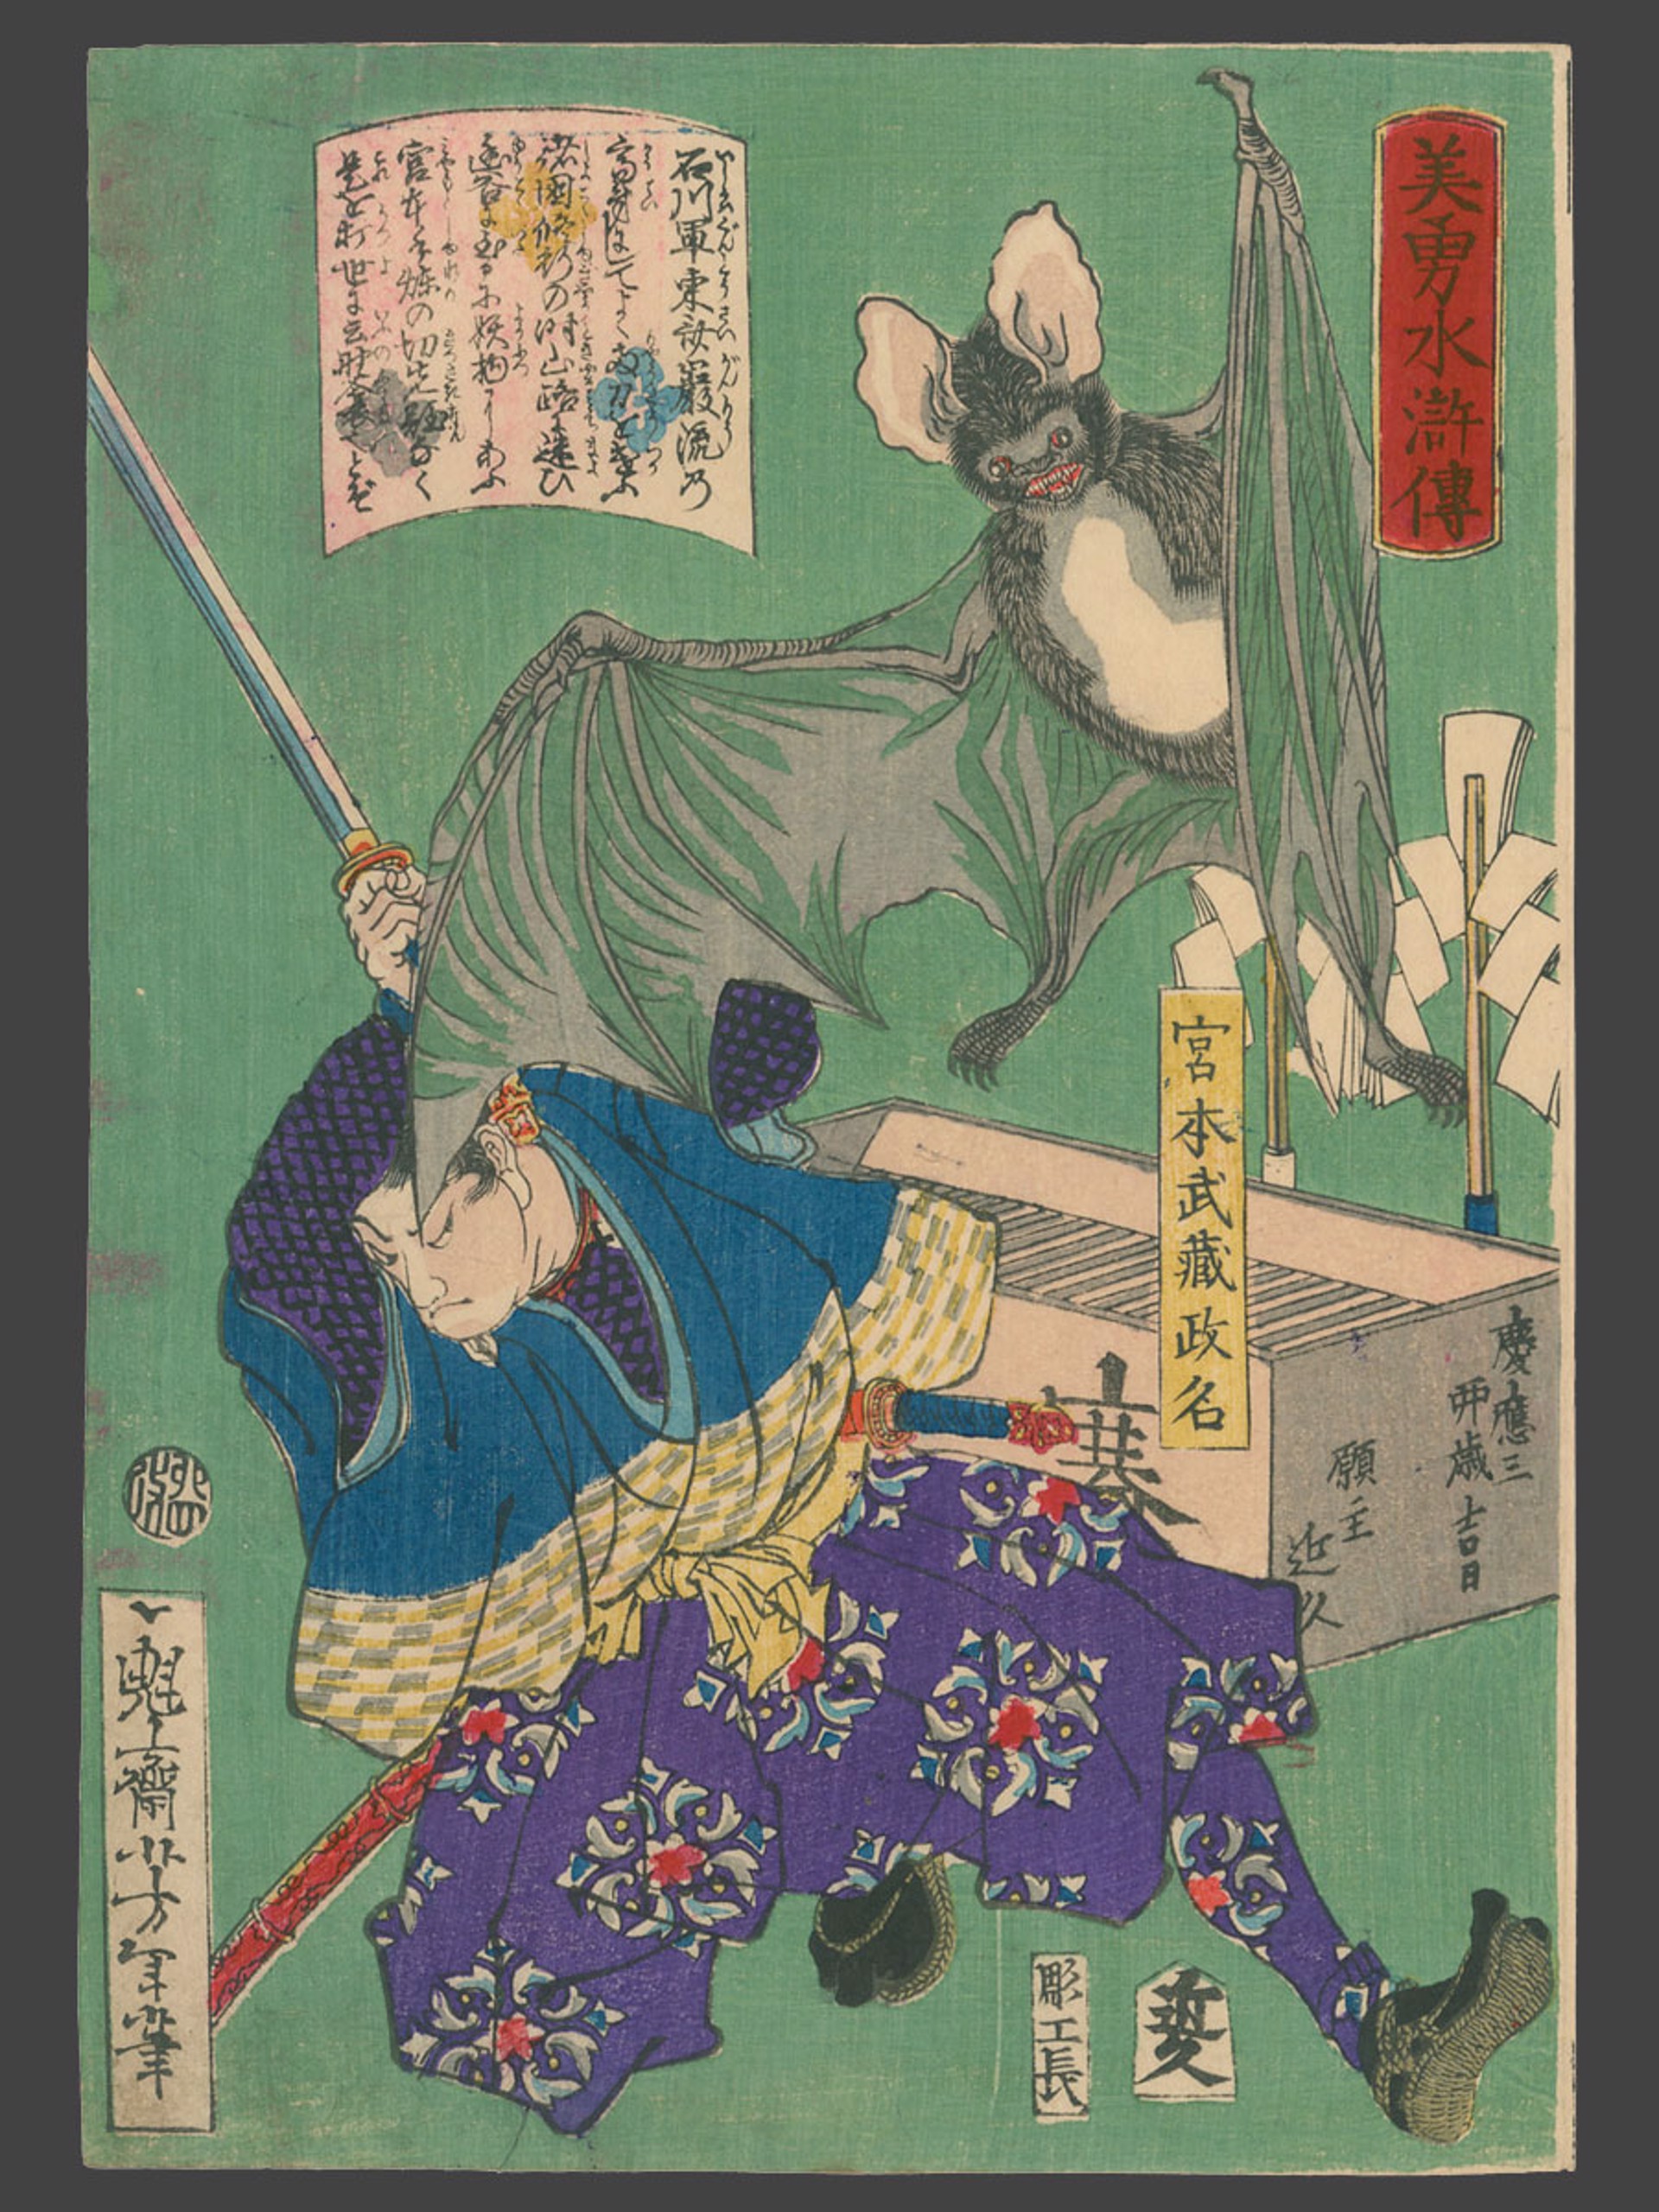 Miyamoto Musashi Biyu Suikoden (Beauty and Valor in Tales of the Water Margin) by Yoshitoshi